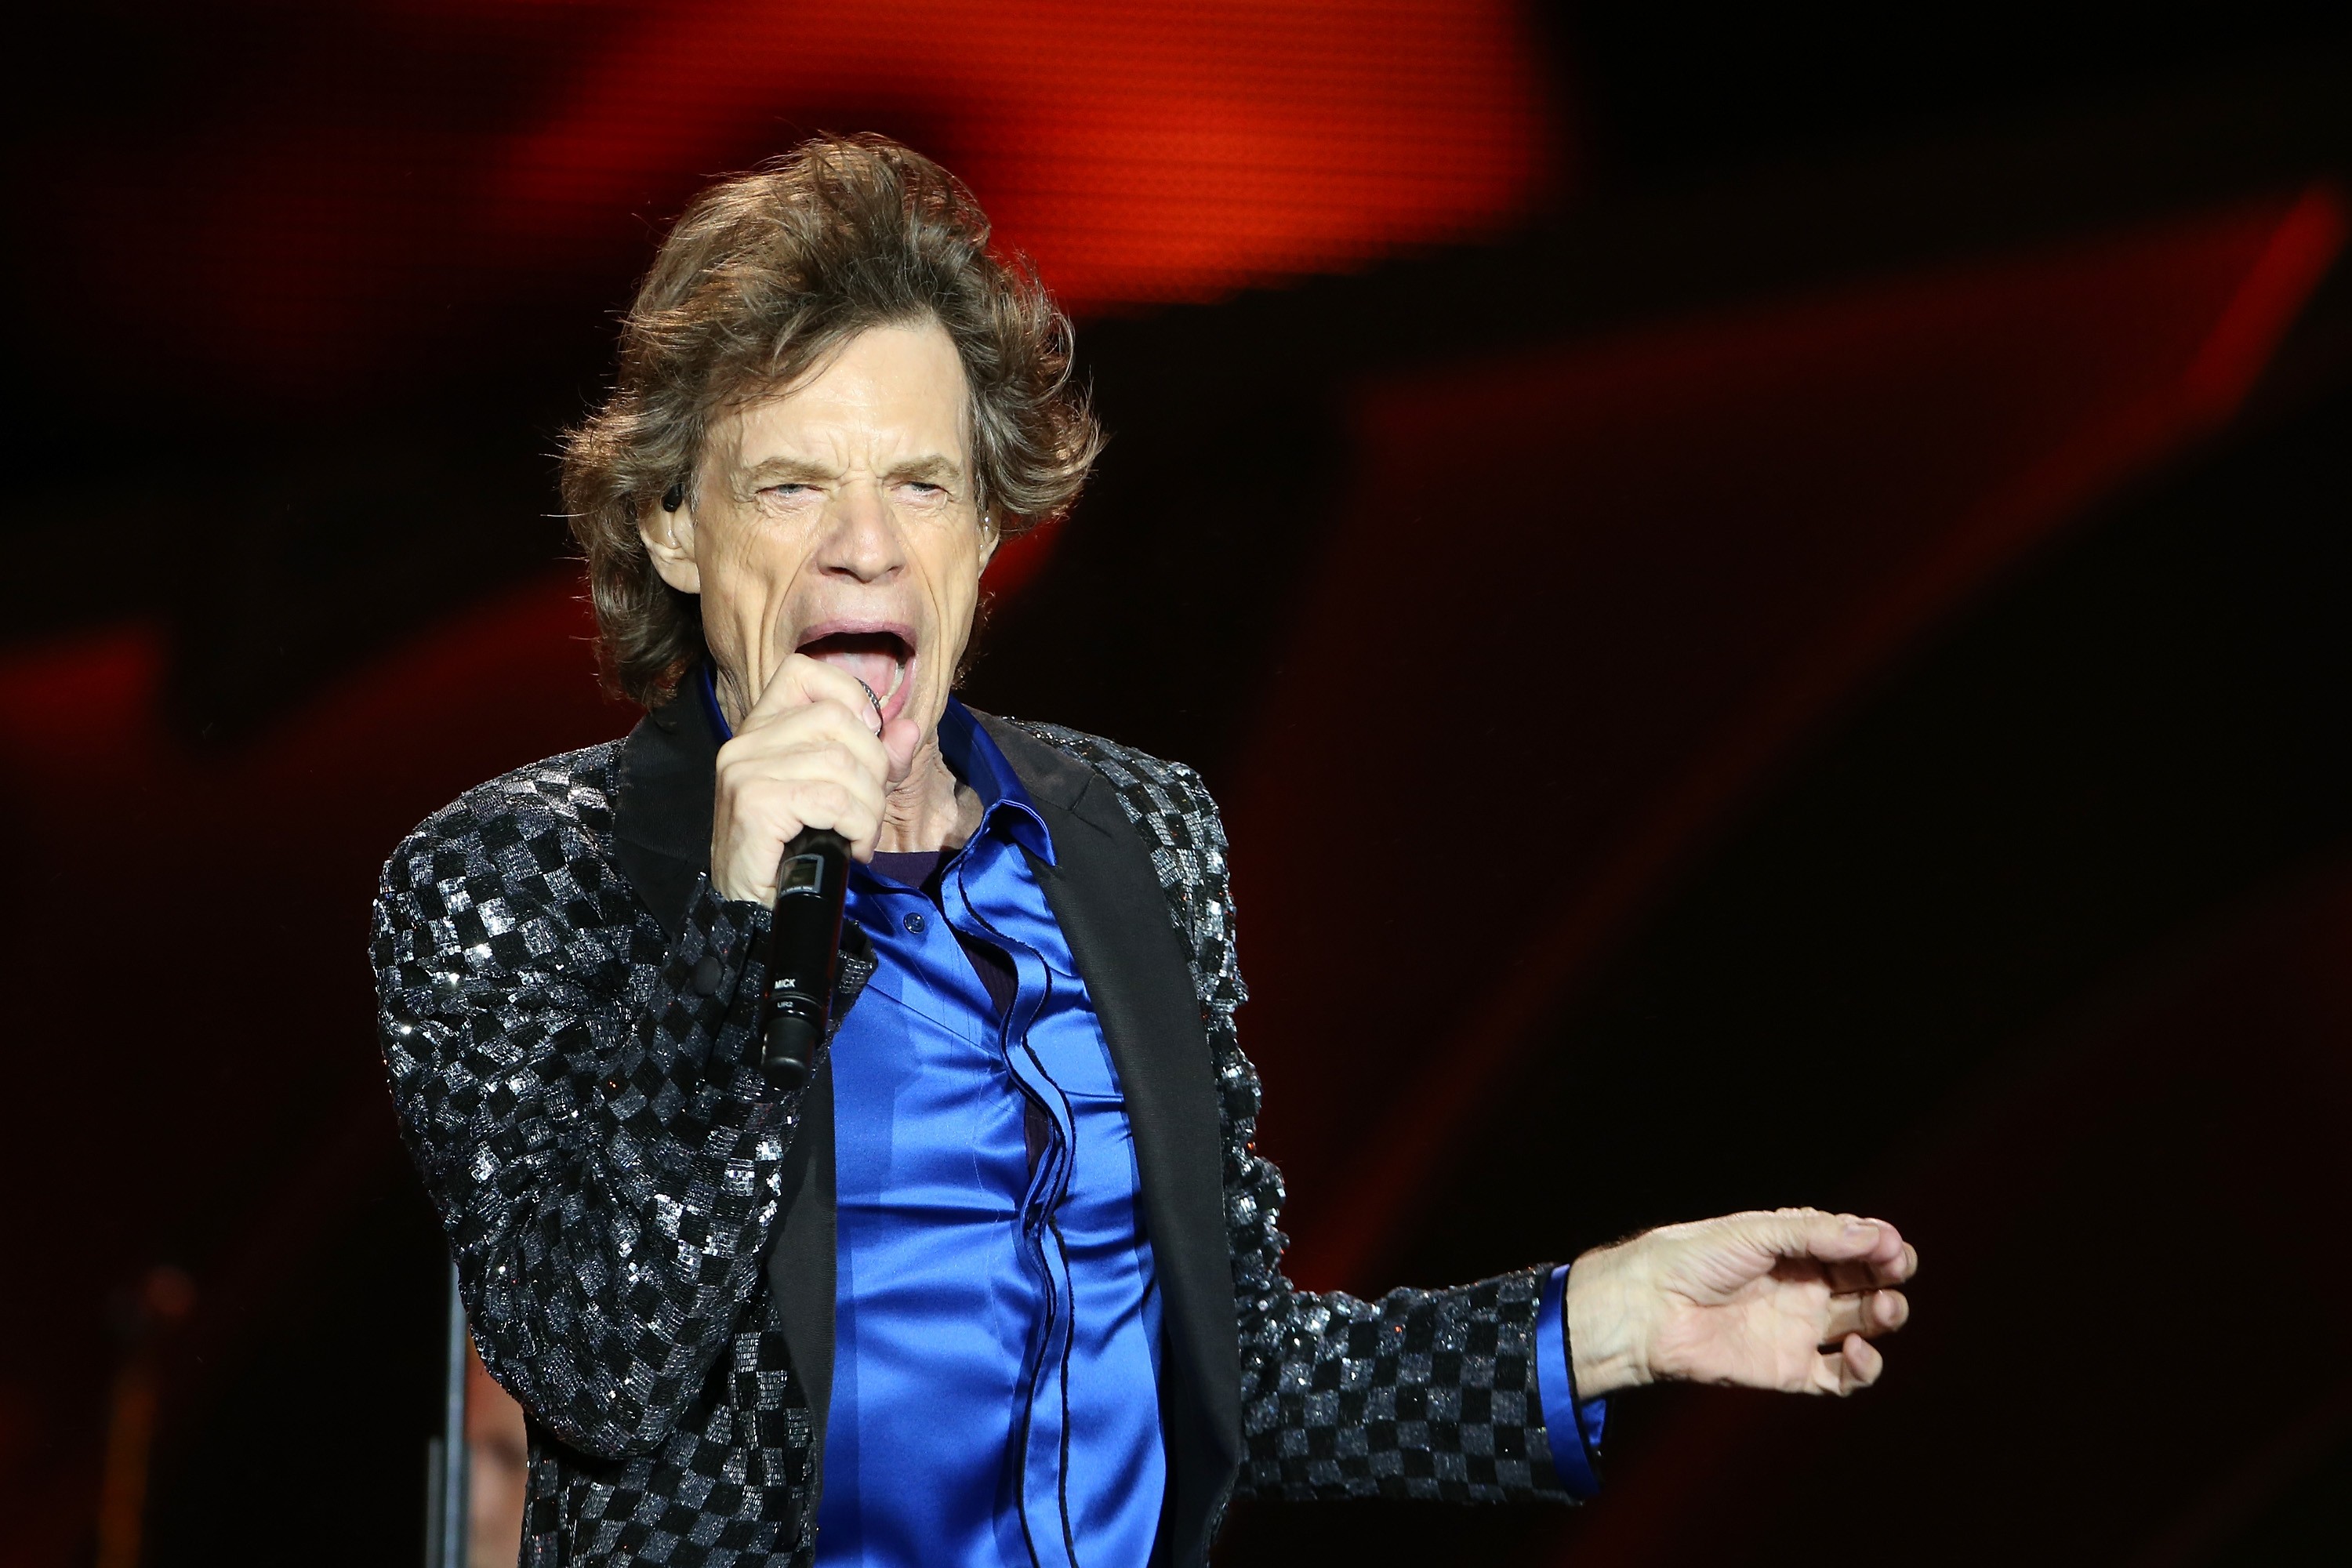 Com uma conta bancária estimada no valor de 360 milhões de dólares, Mick Jagger não gosta de contribuir para os gastos domésticos. Segundo a modelo e ex-mulher do músico, Jerry Hall, é difícil conseguir dele qualquer contribuição para os filhos e compras  (Foto: Getty Images)